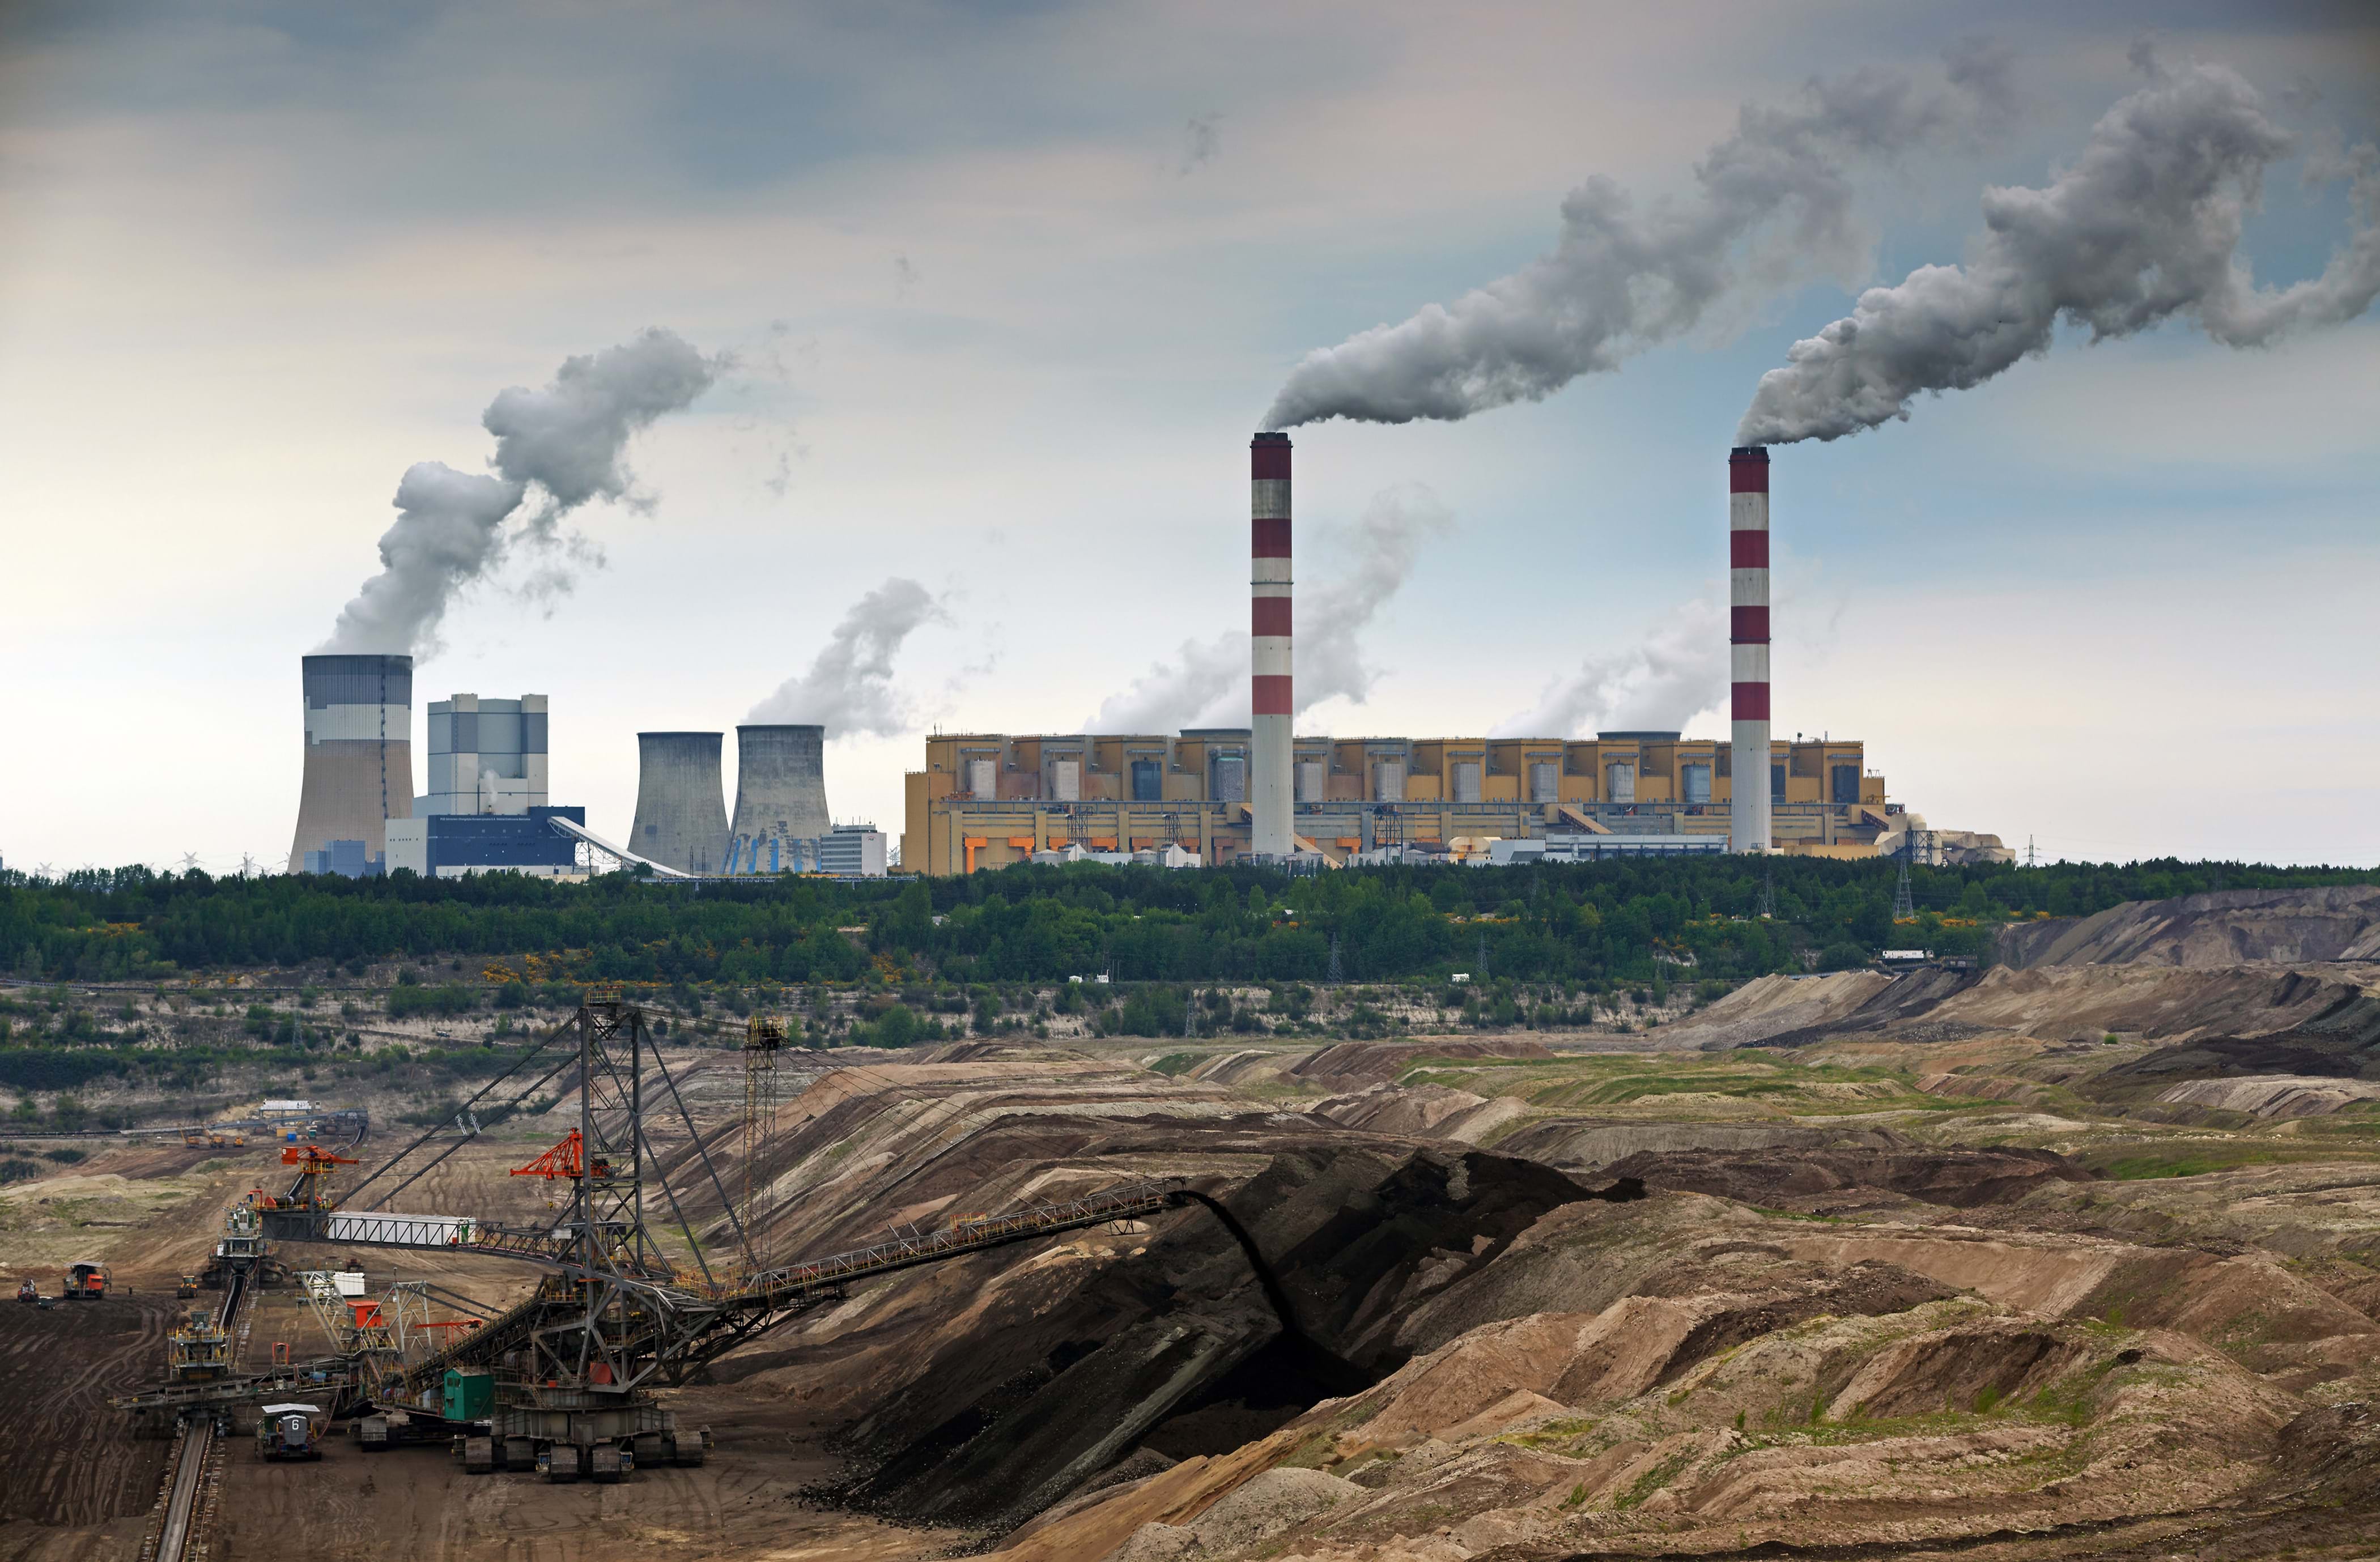 Belchatow herrian dago (Polonia) Europako ikatz meategi eta zentral termiko handiena. Itxiko ote dute 2036rako, agindu bezala?
Argazkia: Poland Coal.